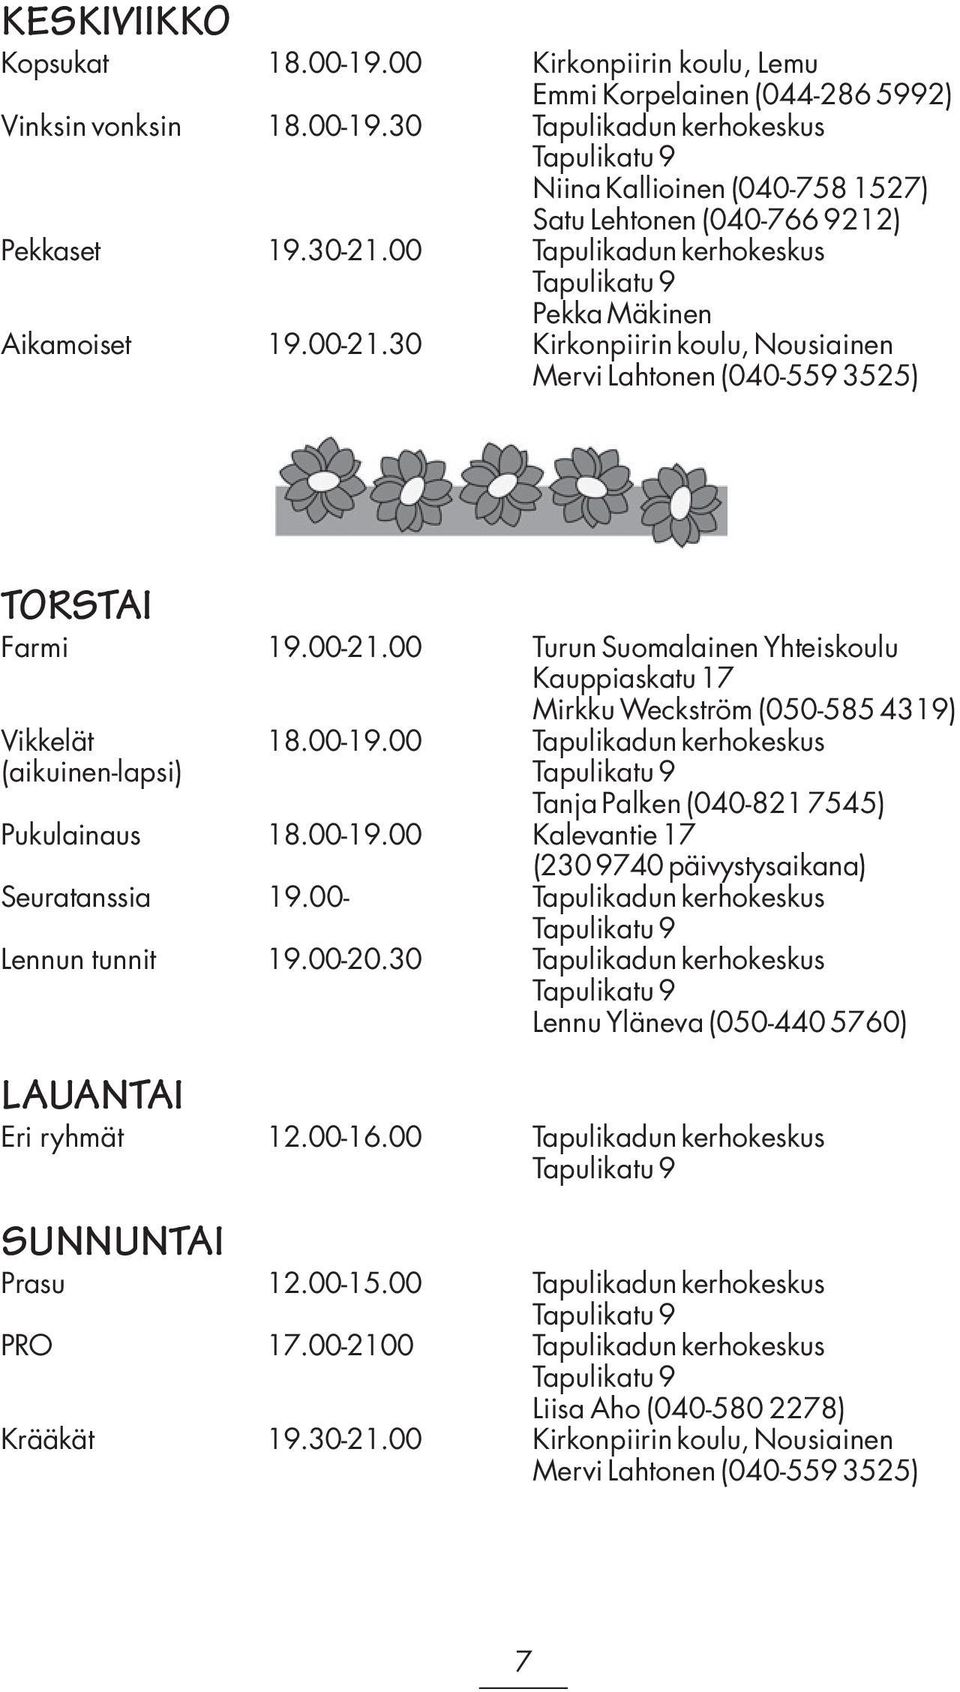 00-19.00 Tapulikadun kerhokeskus (aikuinen-lapsi) Tapulikatu 9 Tanja Palken (040-821 7545) Pukulainaus 18.00-19.00 Kalevantie 17 (230 9740 päivystysaikana) Seuratanssia 19.